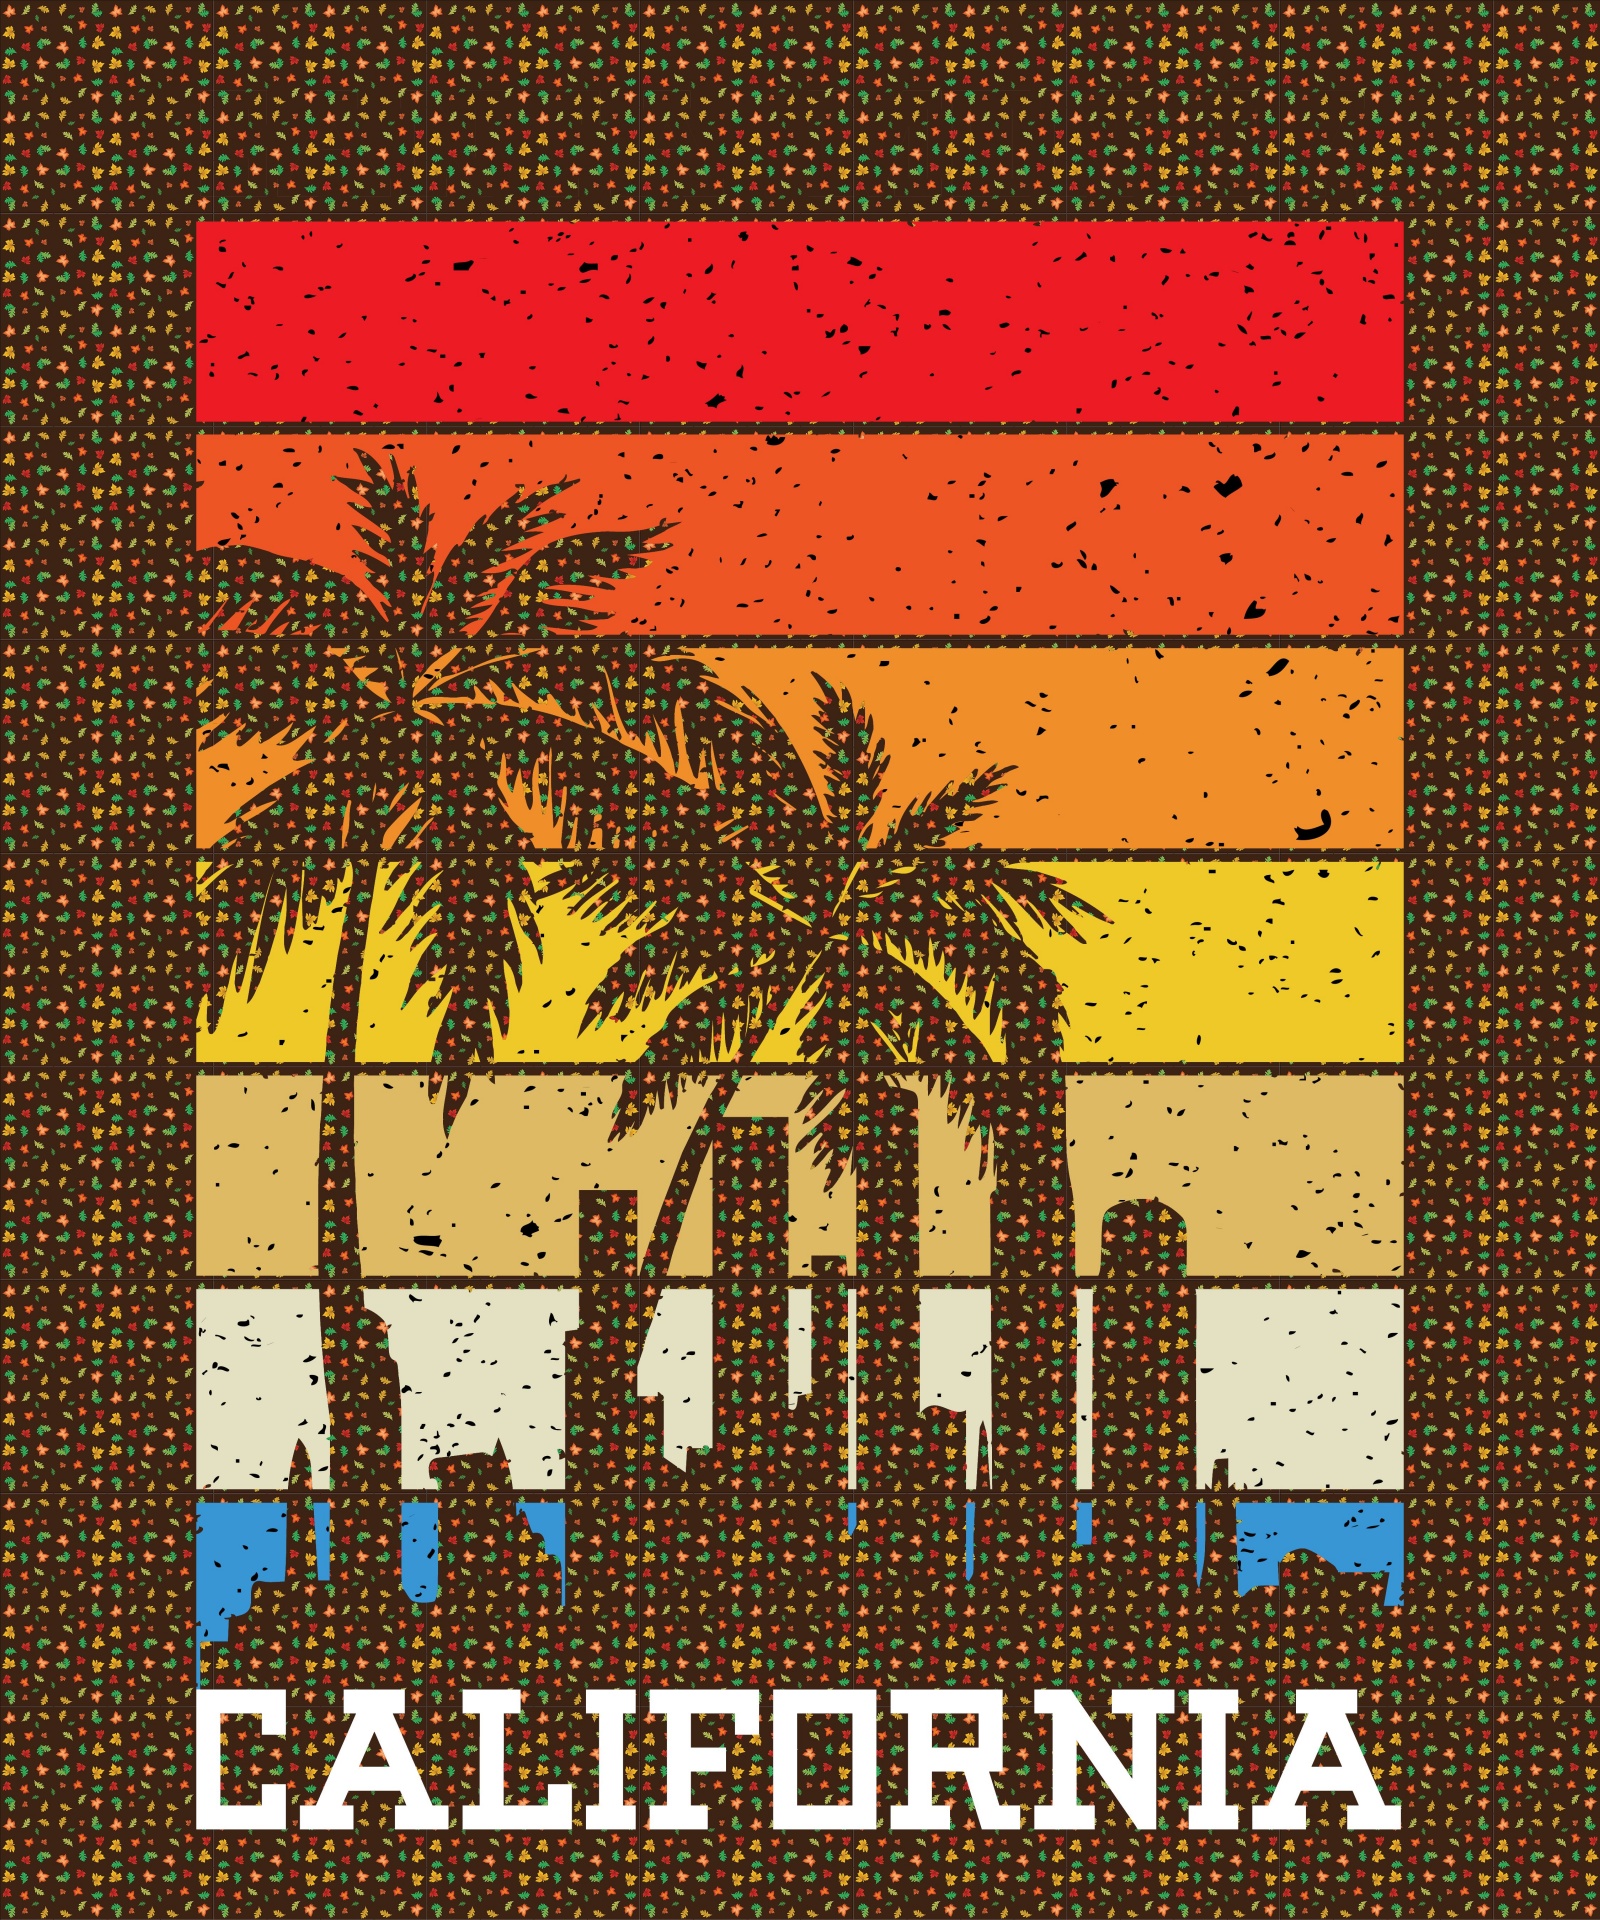 Poster de călătorie din California